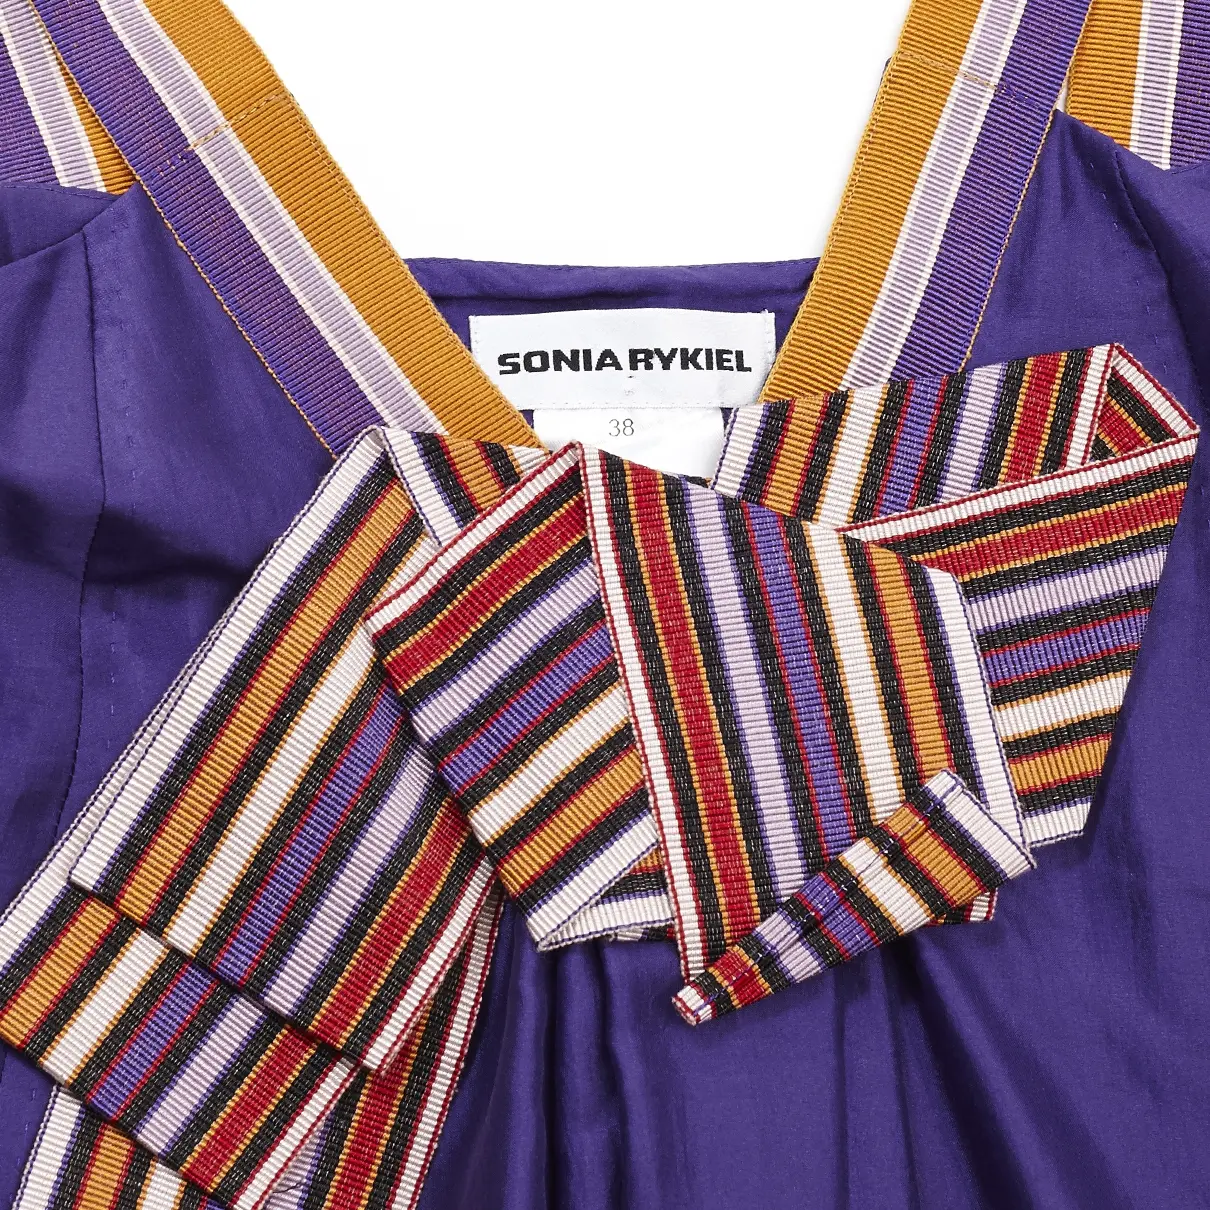 Buy Sonia Rykiel Purple Silk Dress online